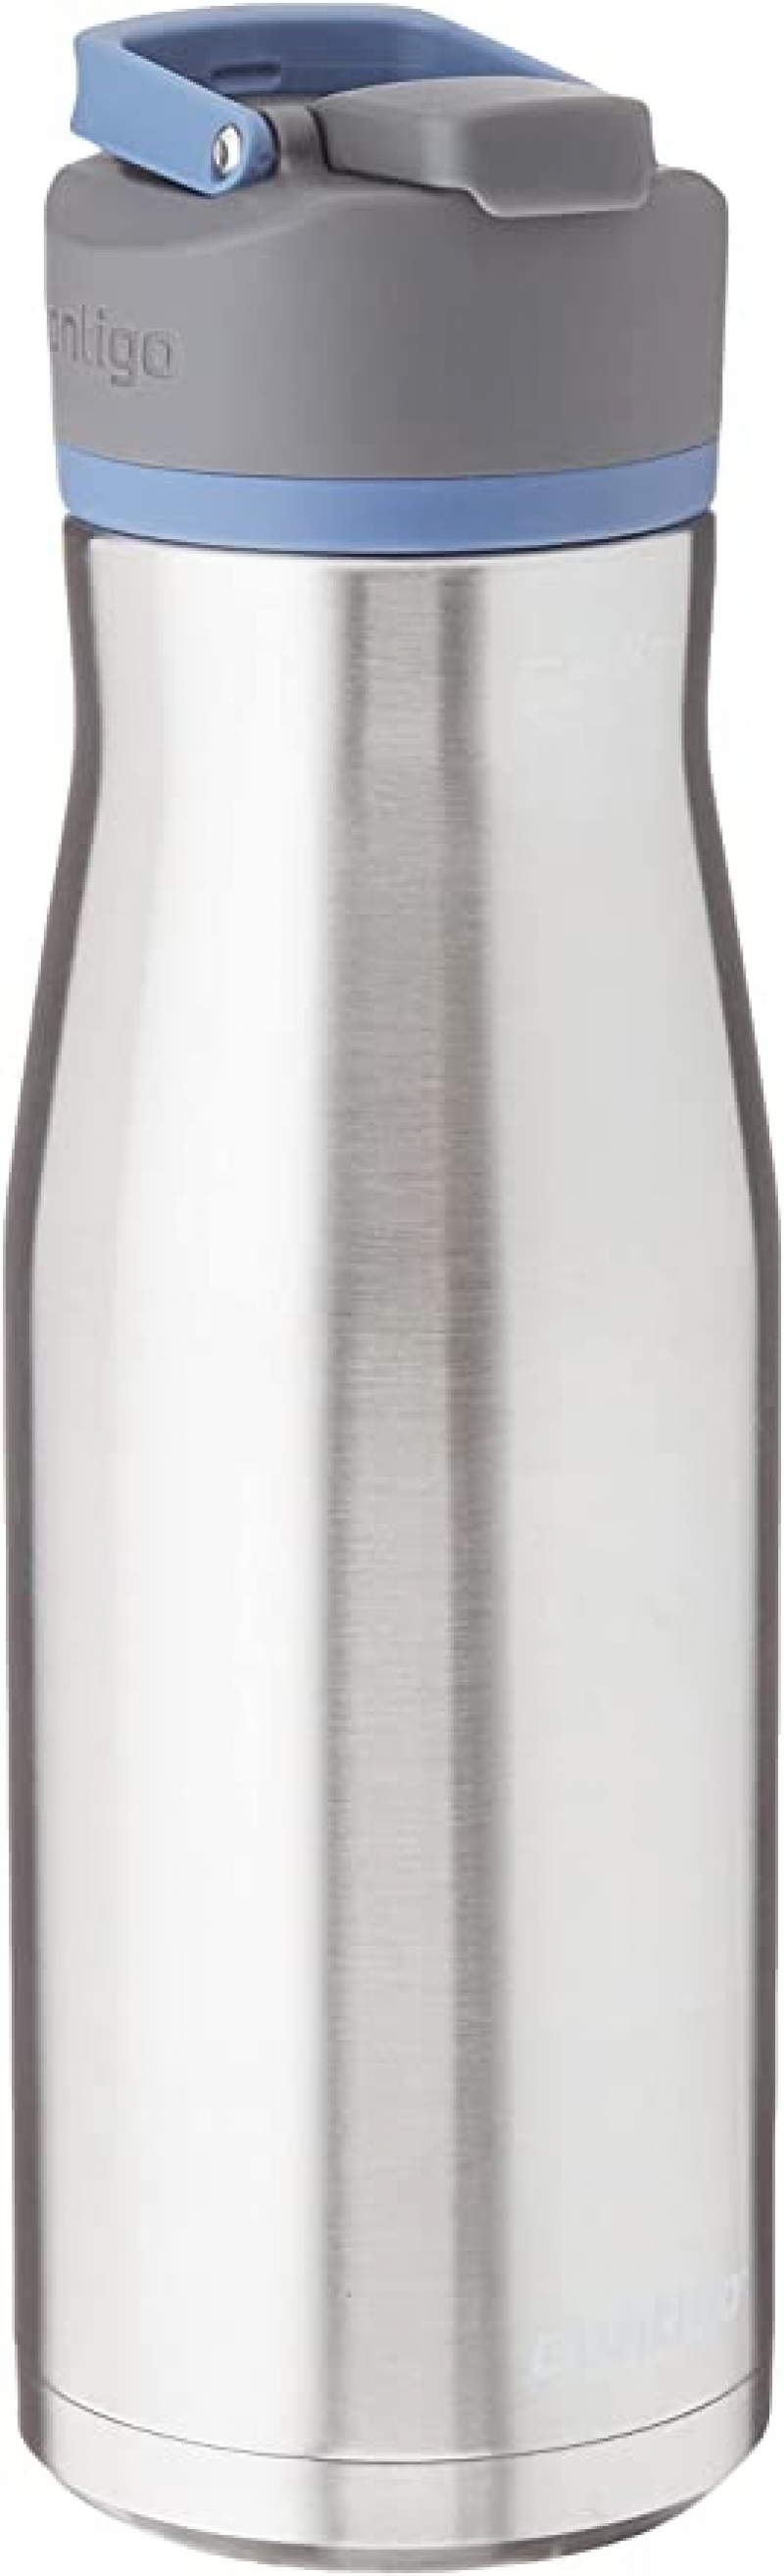 ihocon: Contigo AUTOSEAL Water Bottle, 32oz 保溫水瓶